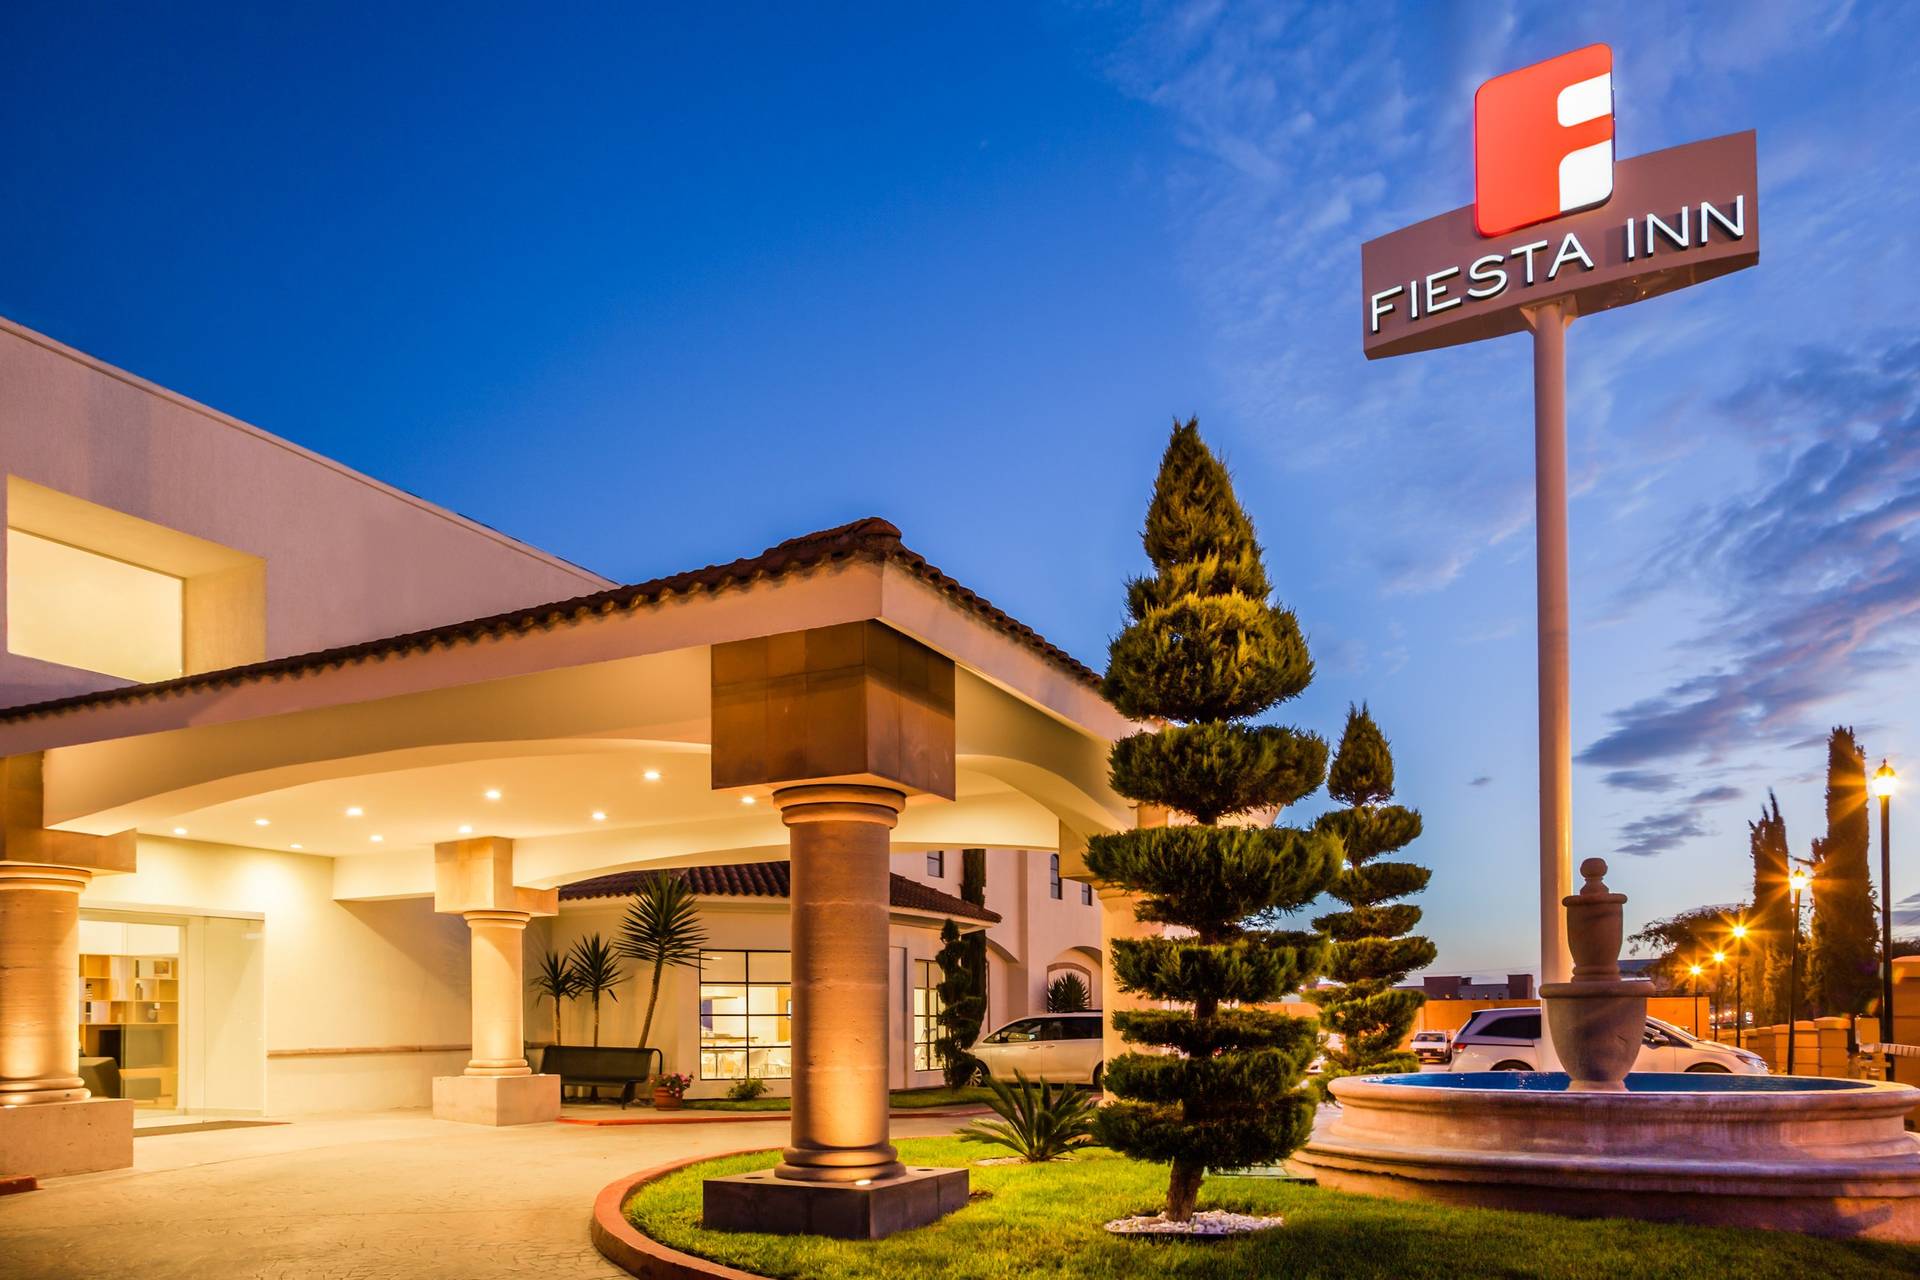 Hotel Fiesta Inn Saltillo Consulta Disponibilidad Y Precios